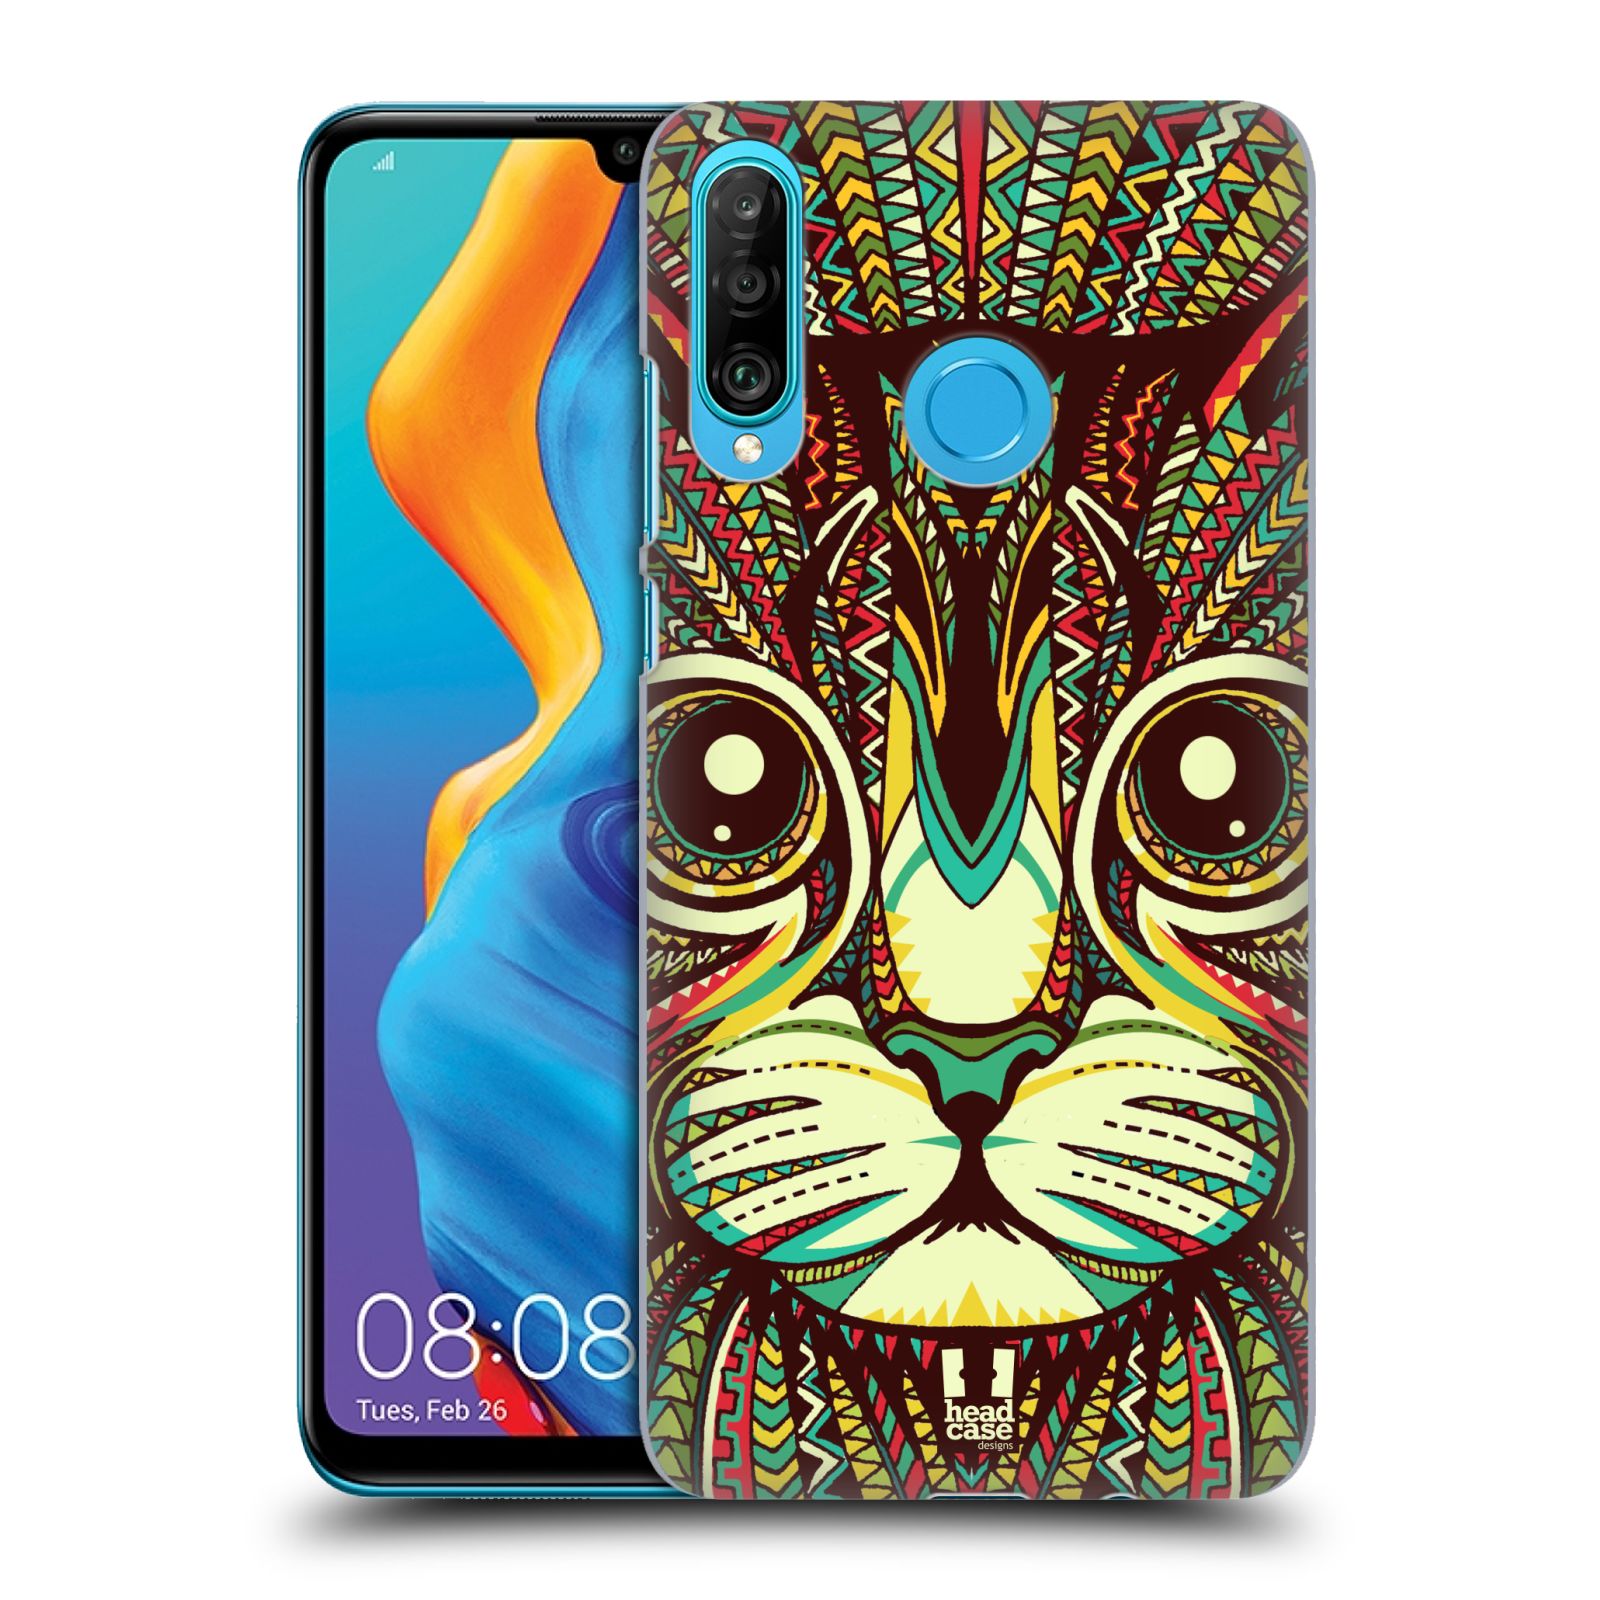 Pouzdro na mobil Huawei P30 LITE - HEAD CASE - vzor Aztécký motiv zvíře 2 kotě